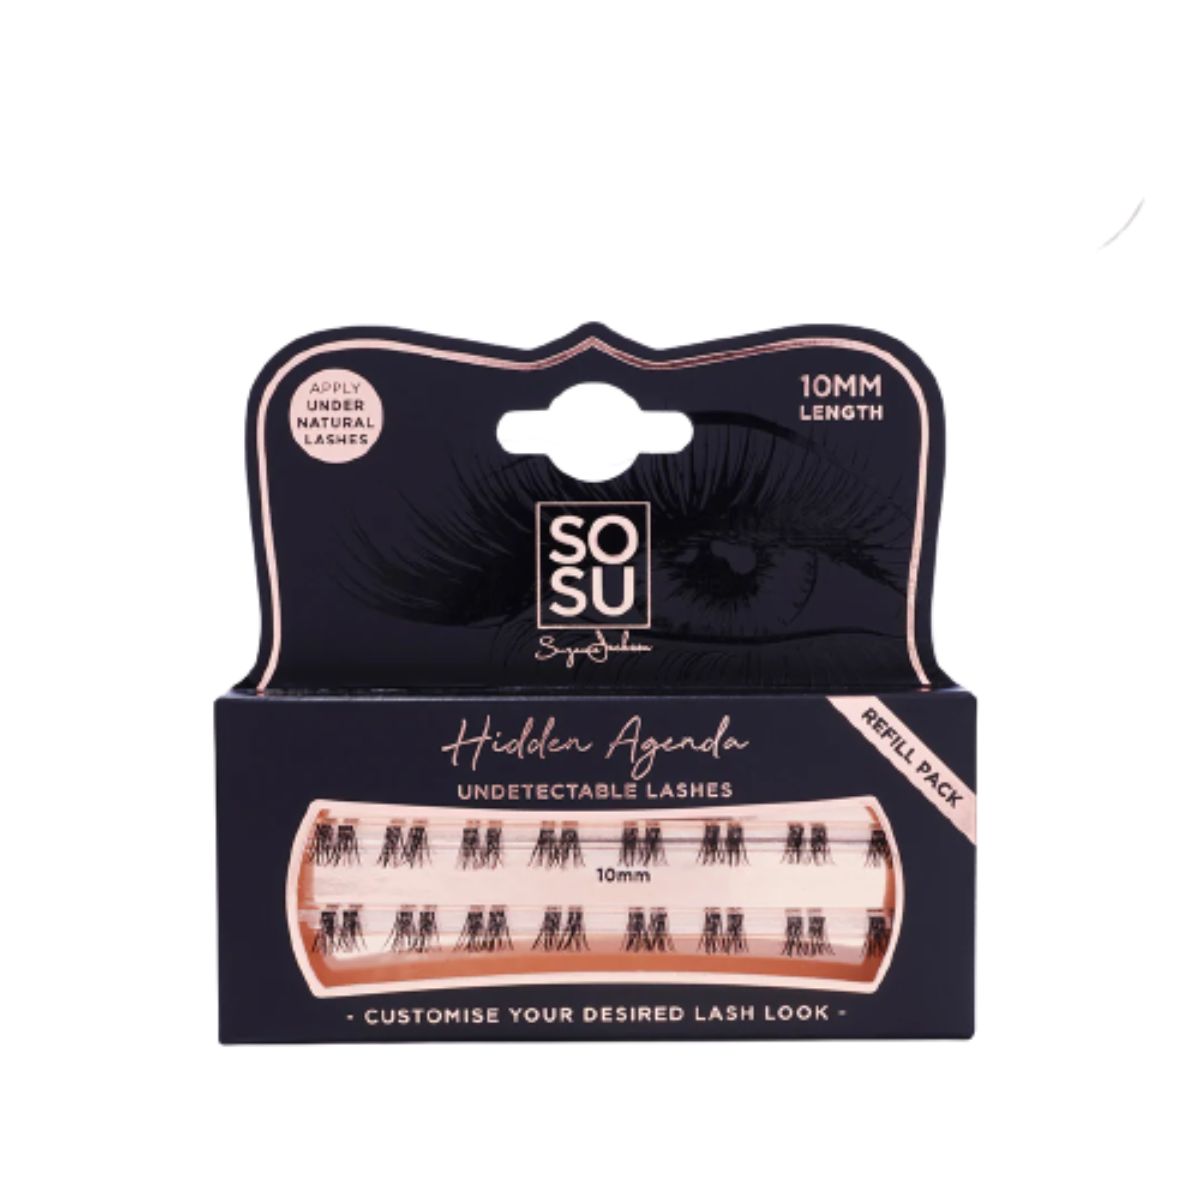 SOSU Cosmetics Hidden Agenda Refill Pack 10mm